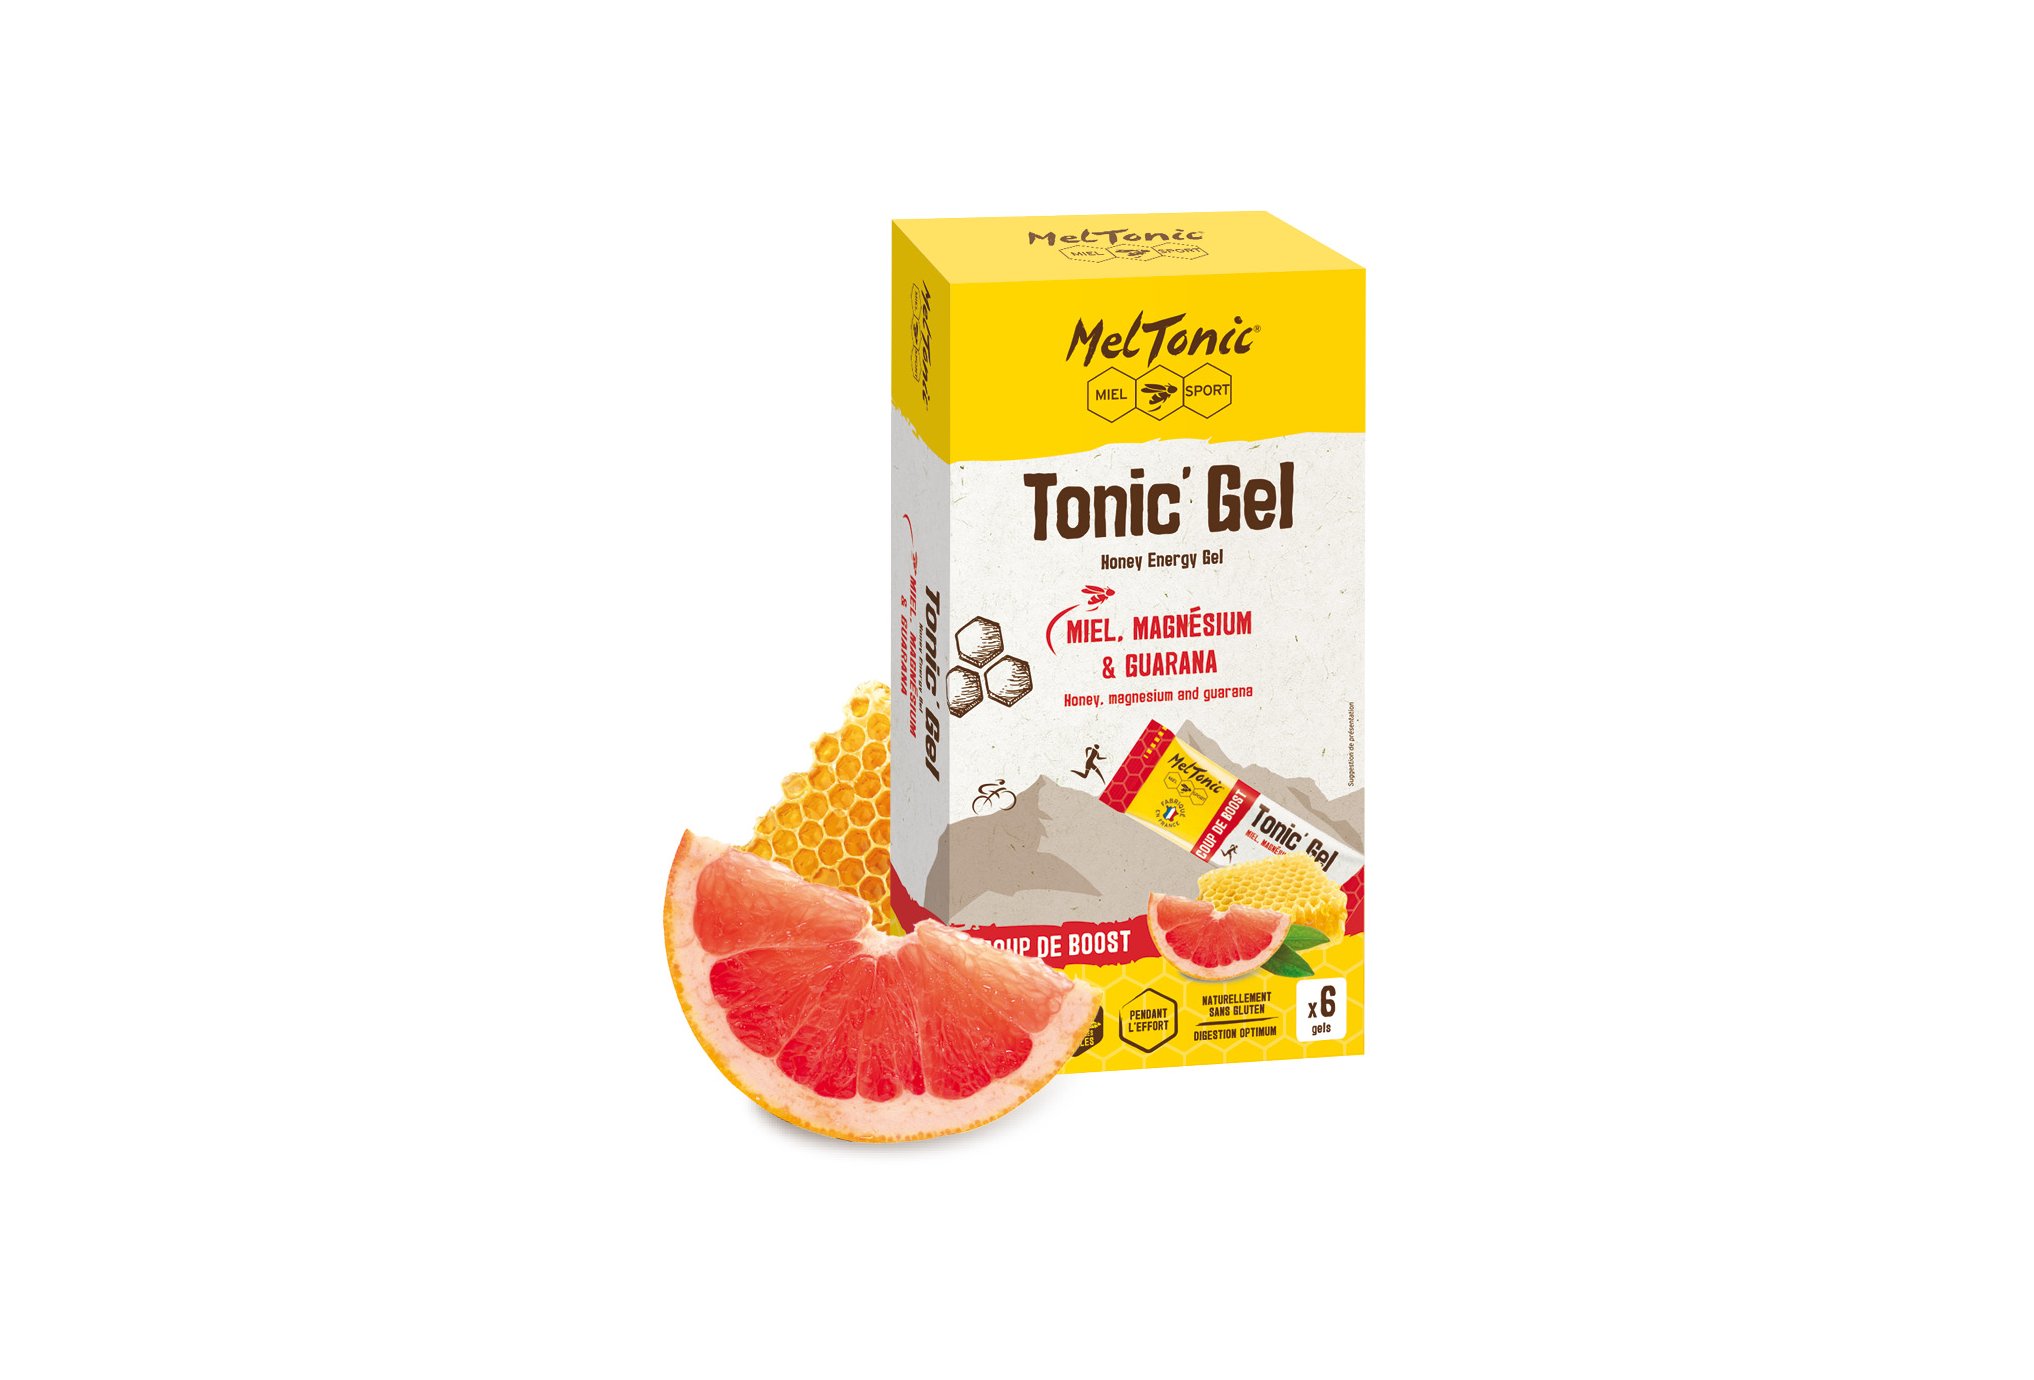 MelTonic Etui Tonic'Gel Coup de Boost - 6 gels Diététique Gels